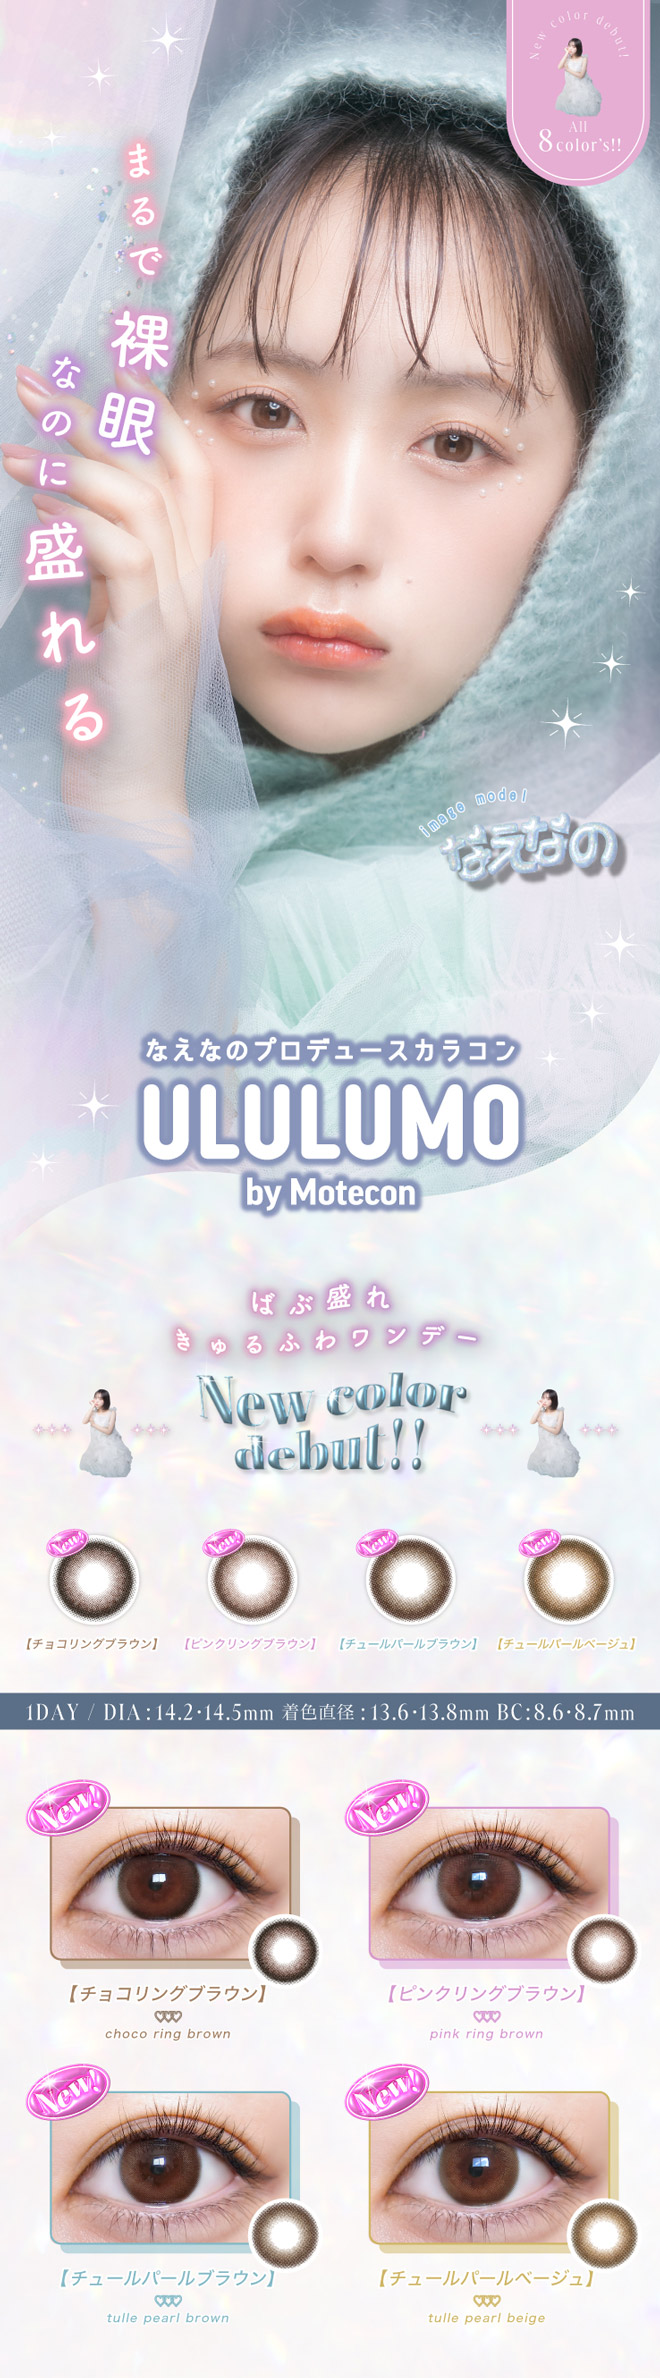 ウルルモ バイ モテコン なえさんうるうる 10枚入 ULULUMO by Motecon